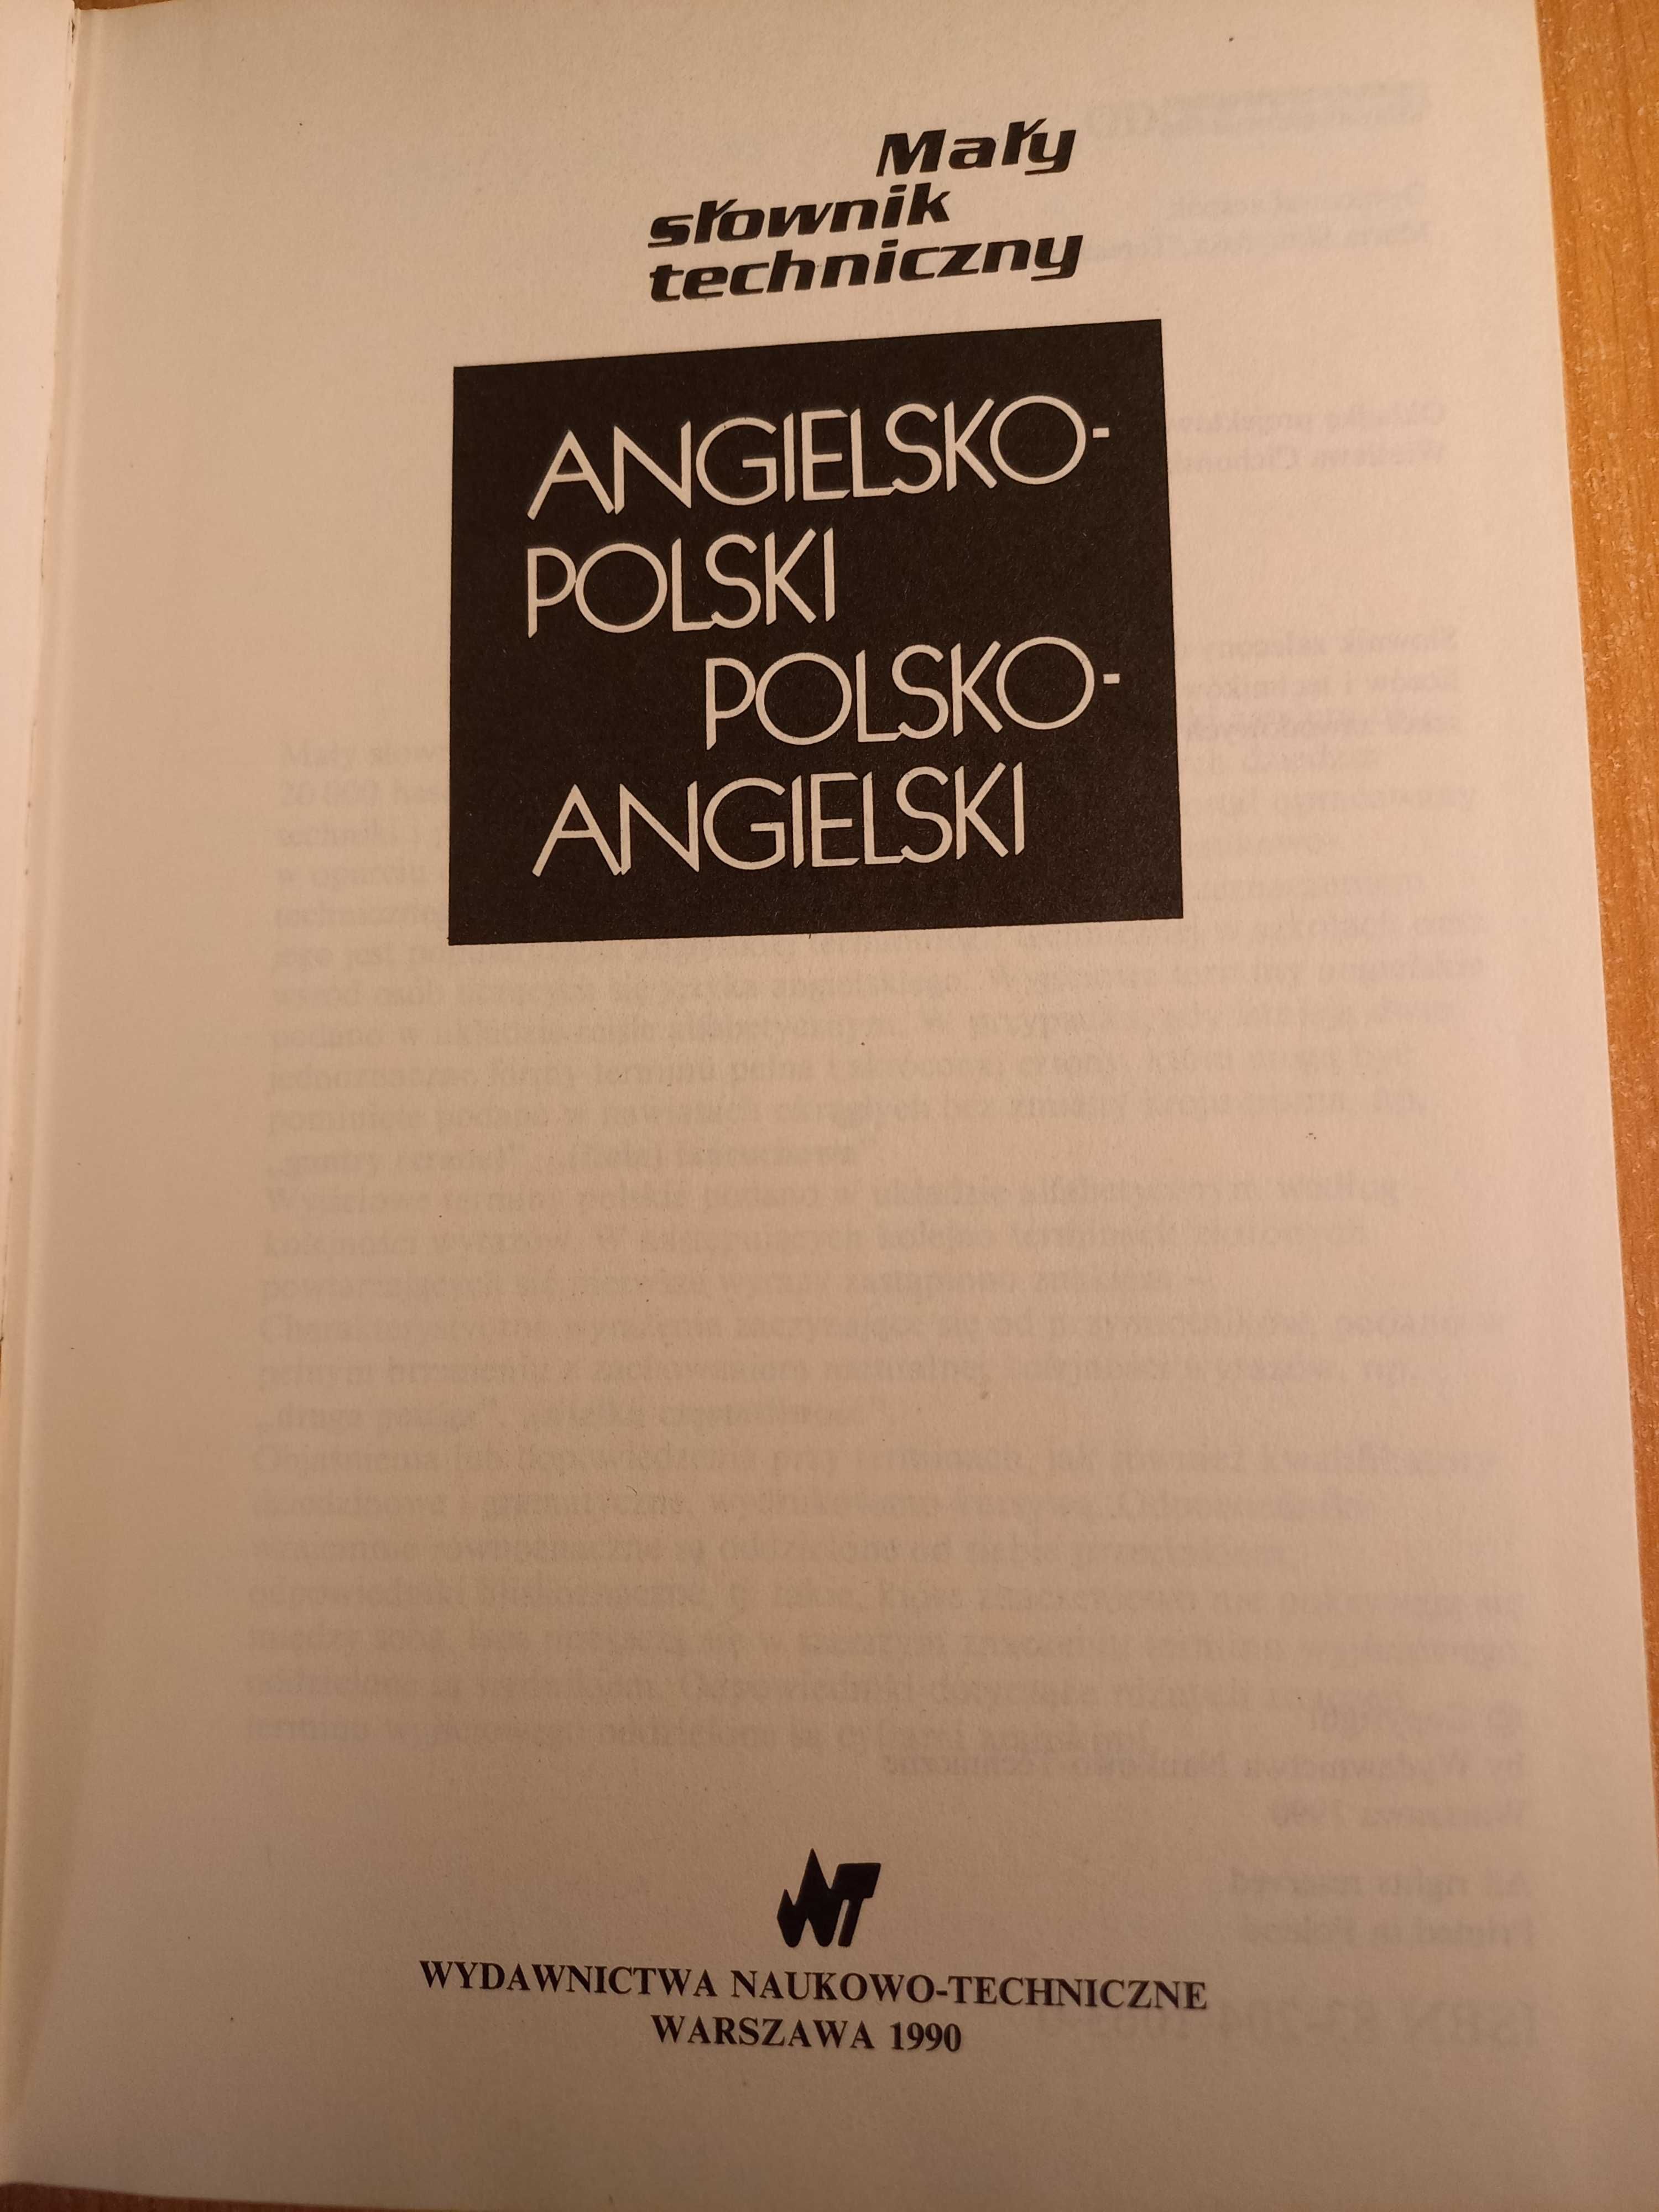 słownik angielsko polski polsko angielski mały techniczny 1990